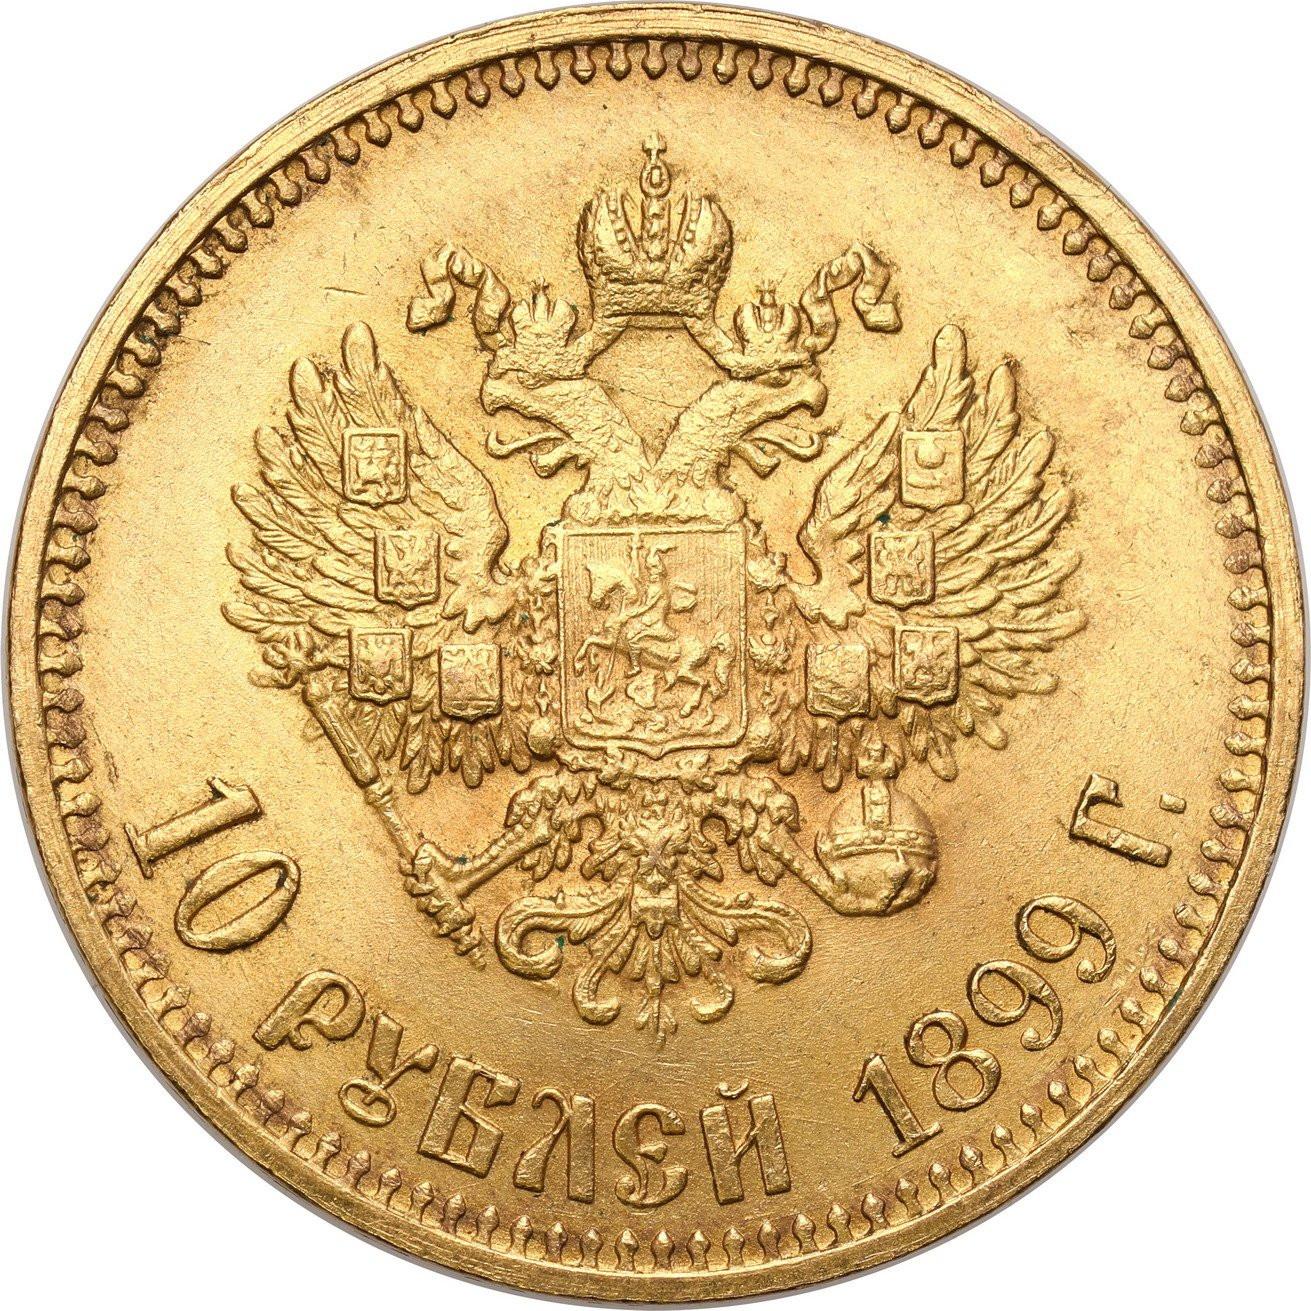 Rosja. Mikołaj II. 10 Rubli 1899 АГ - AG, Petersburg - PIĘKNE